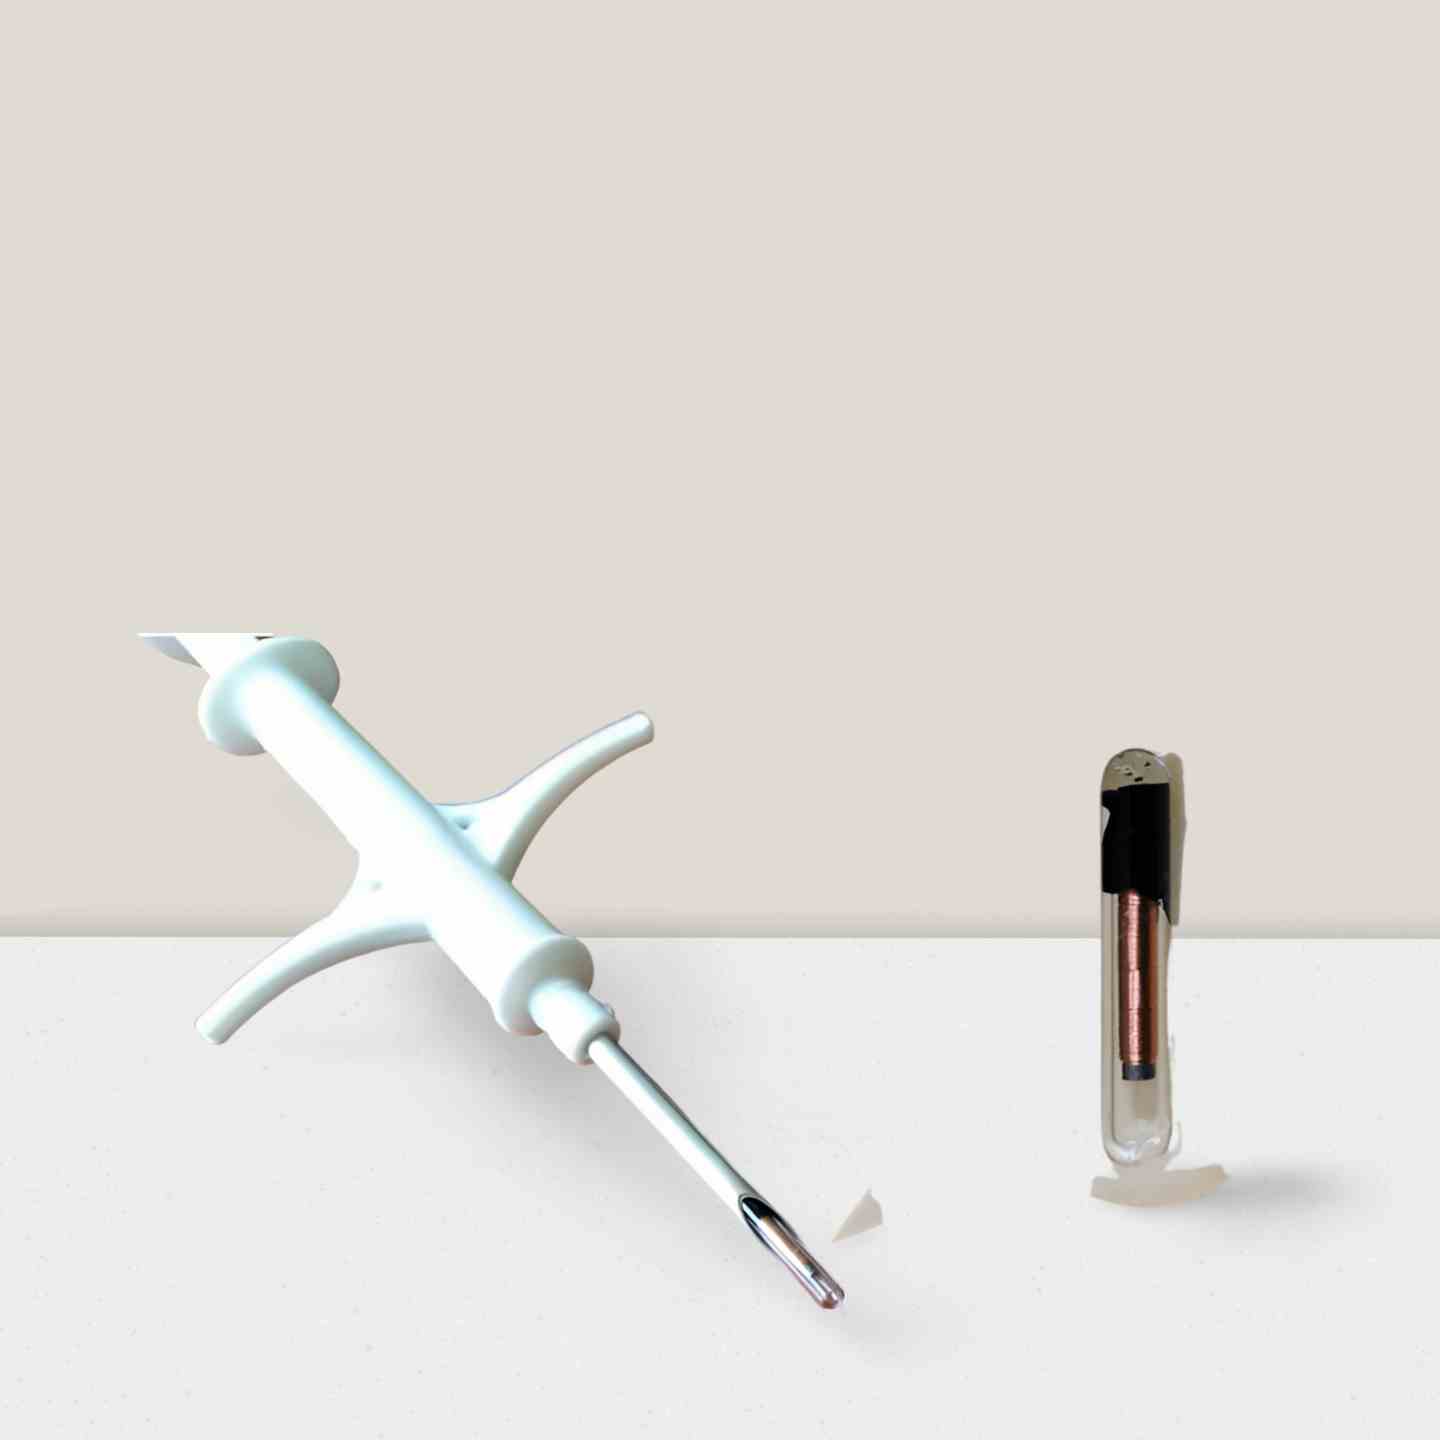 12mm Pre-Load Sterile Syringe